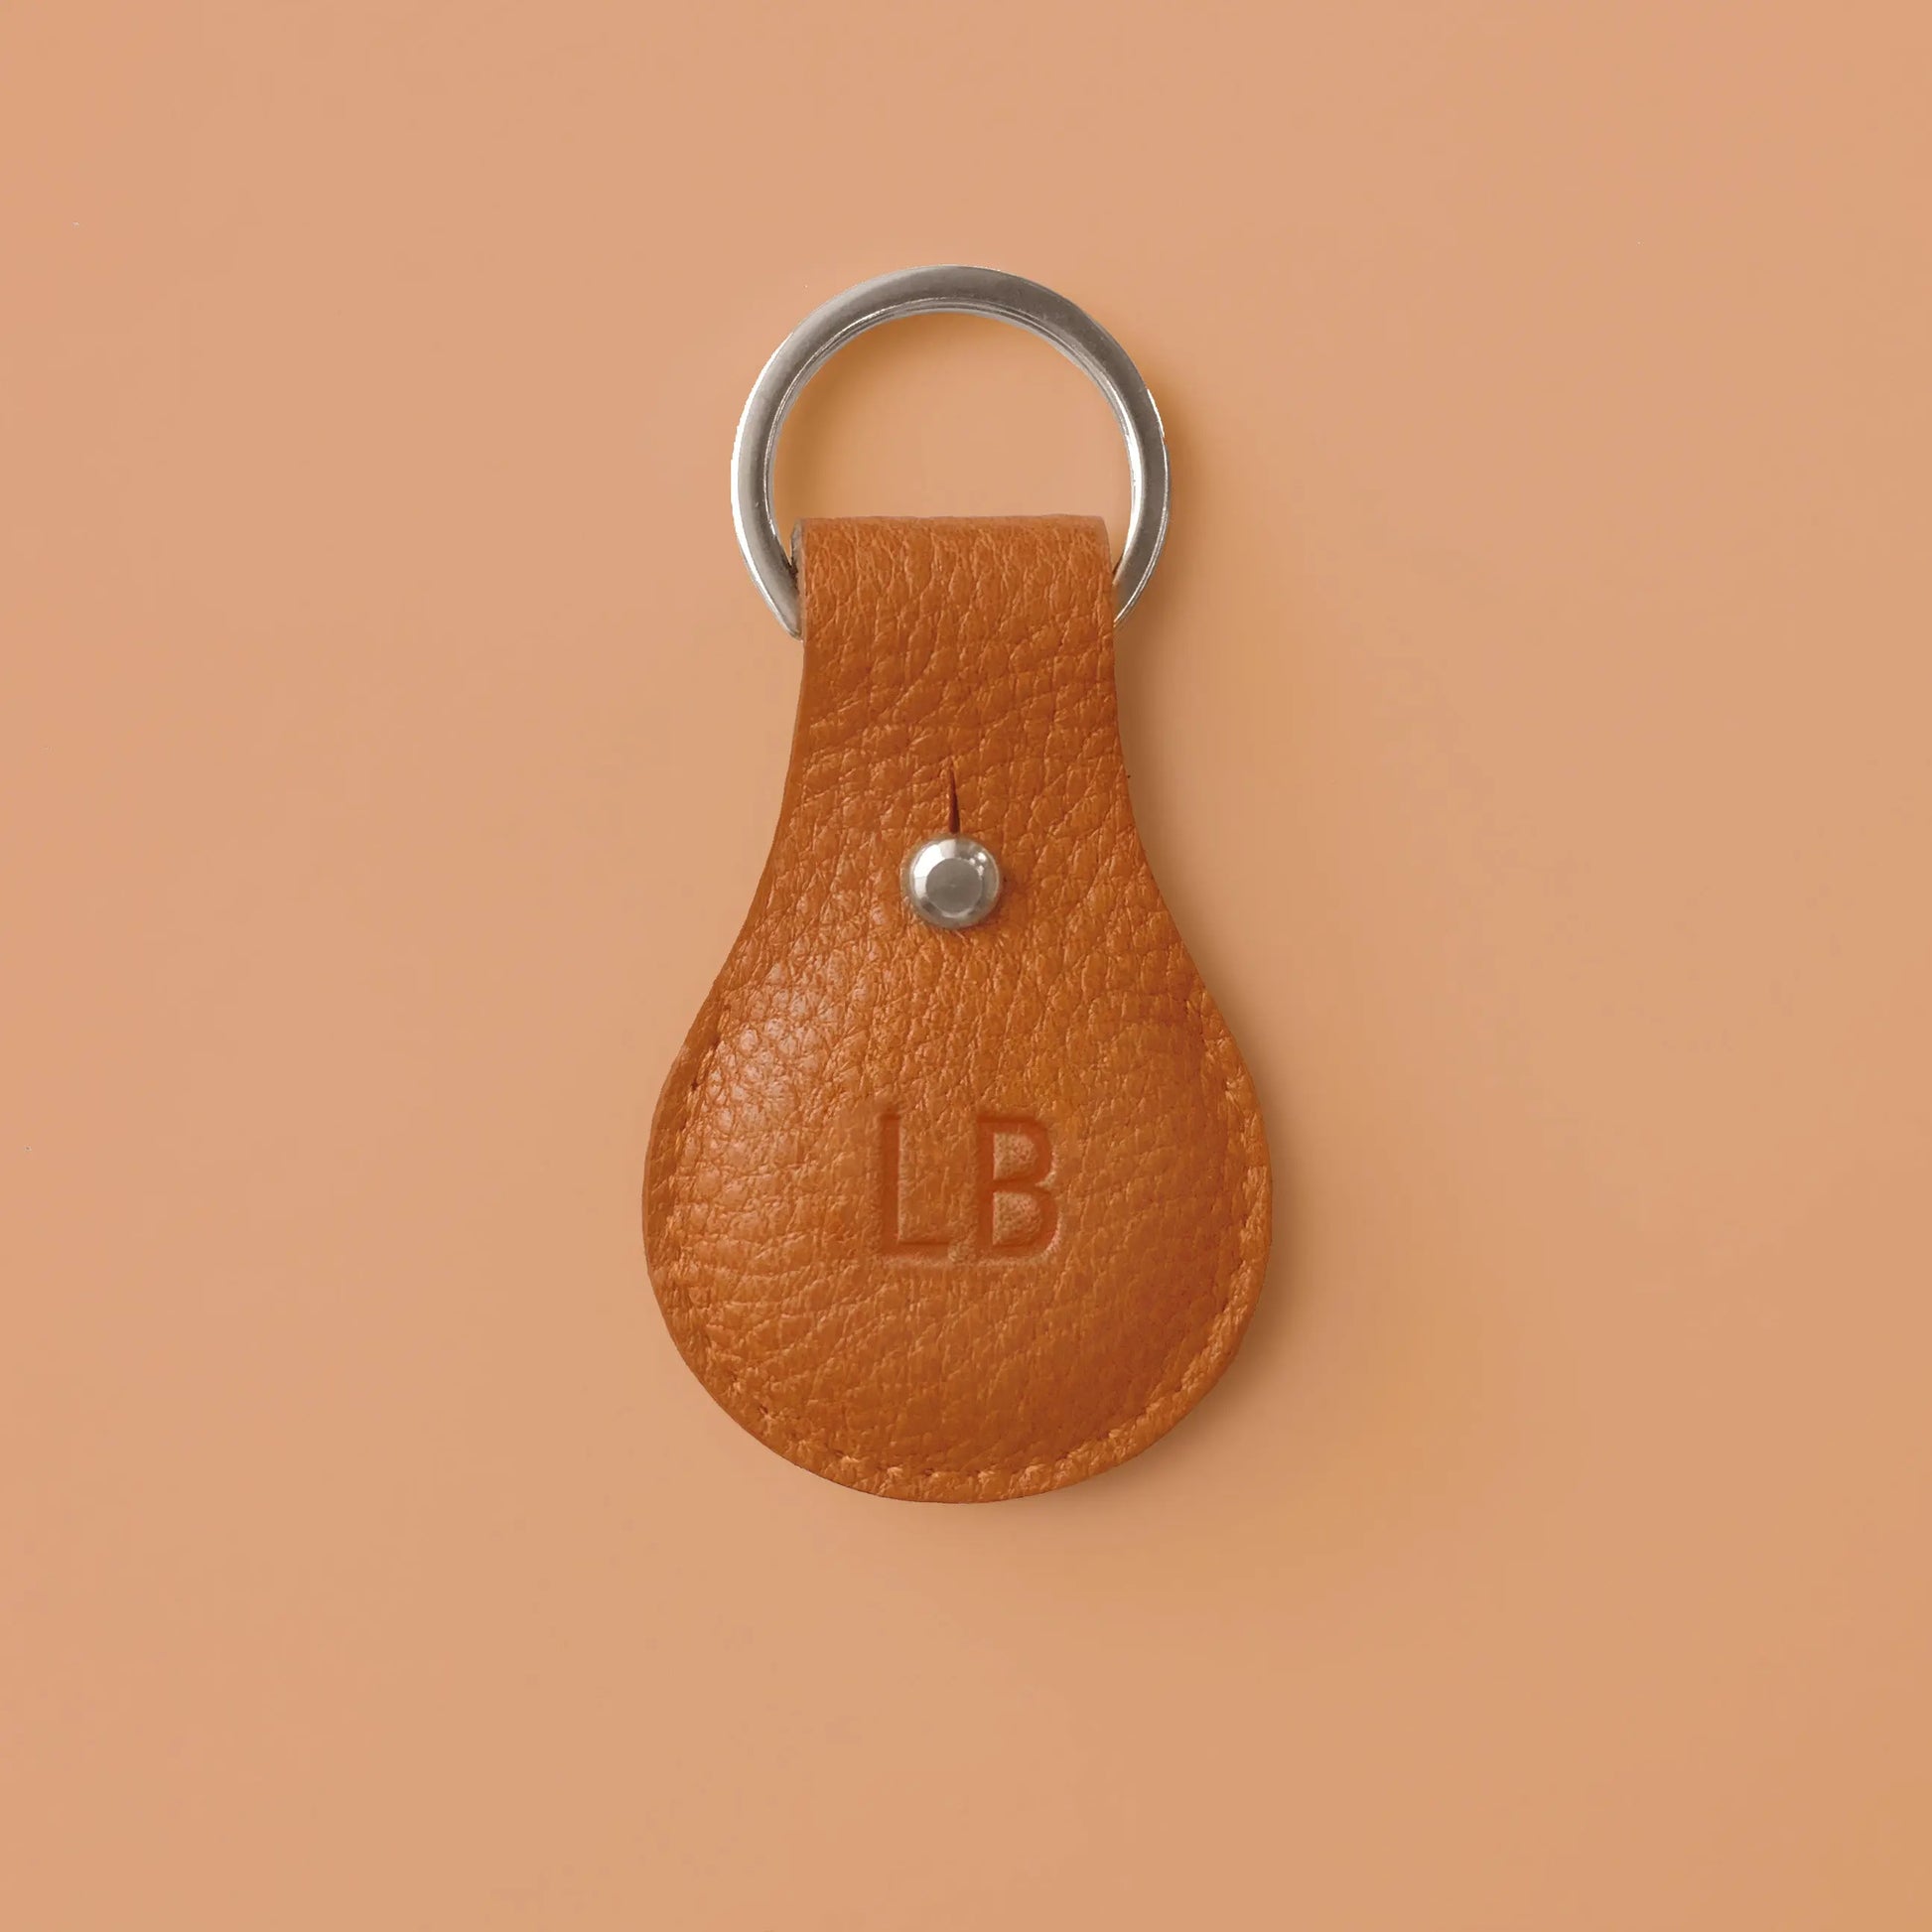 Airtaghülle aus orangefarbenem Leder mit Schlüsselring und eingeprägten Initialen